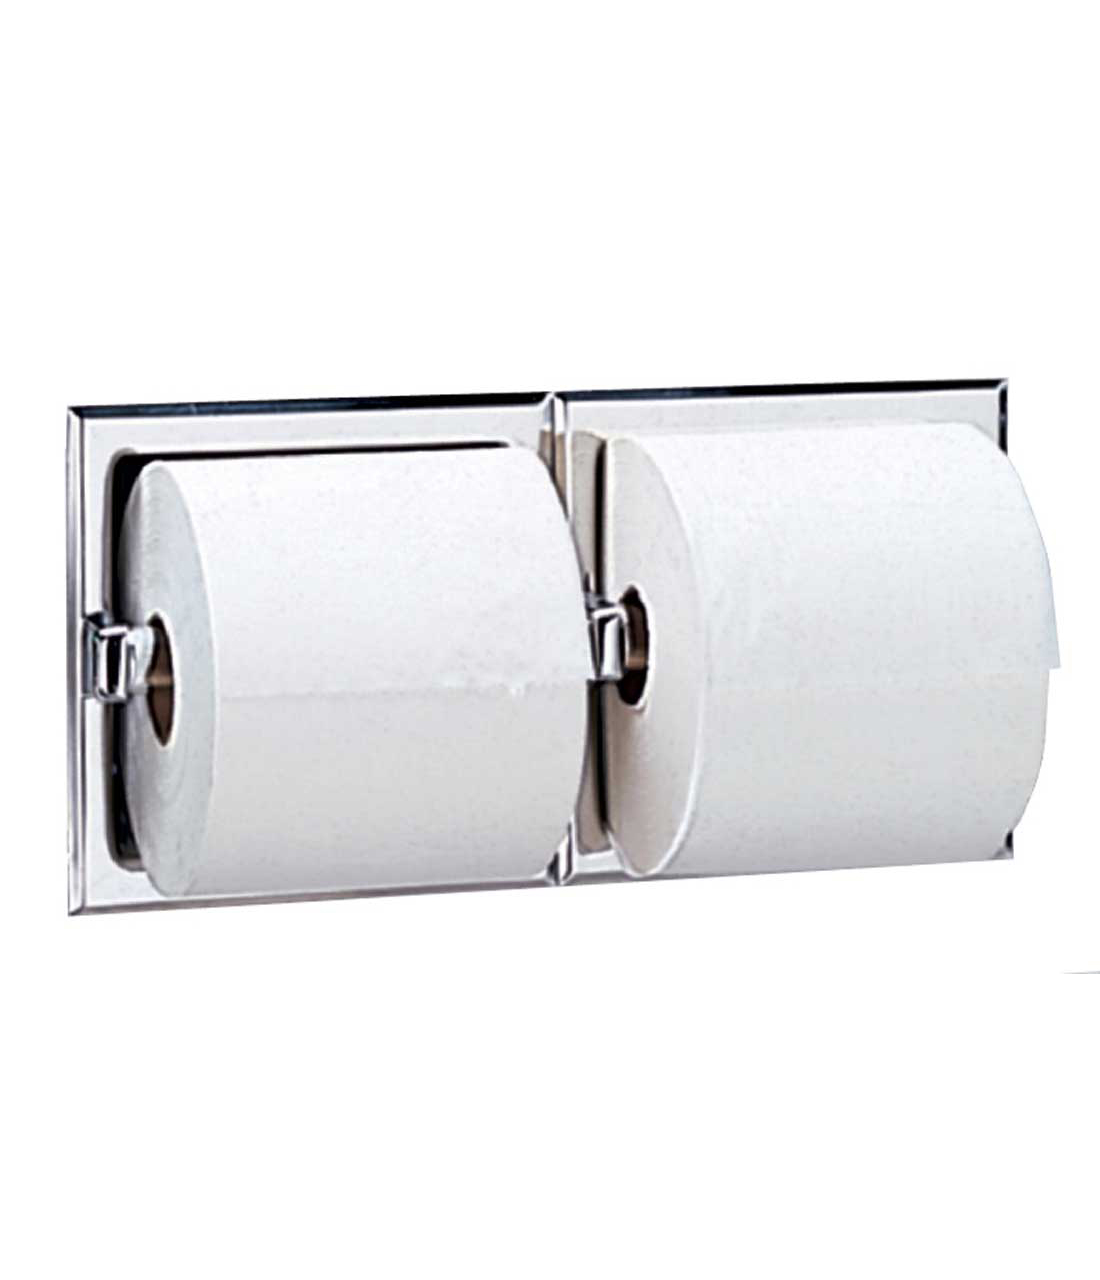 Recessed Toilet Tissue Dispensers Image